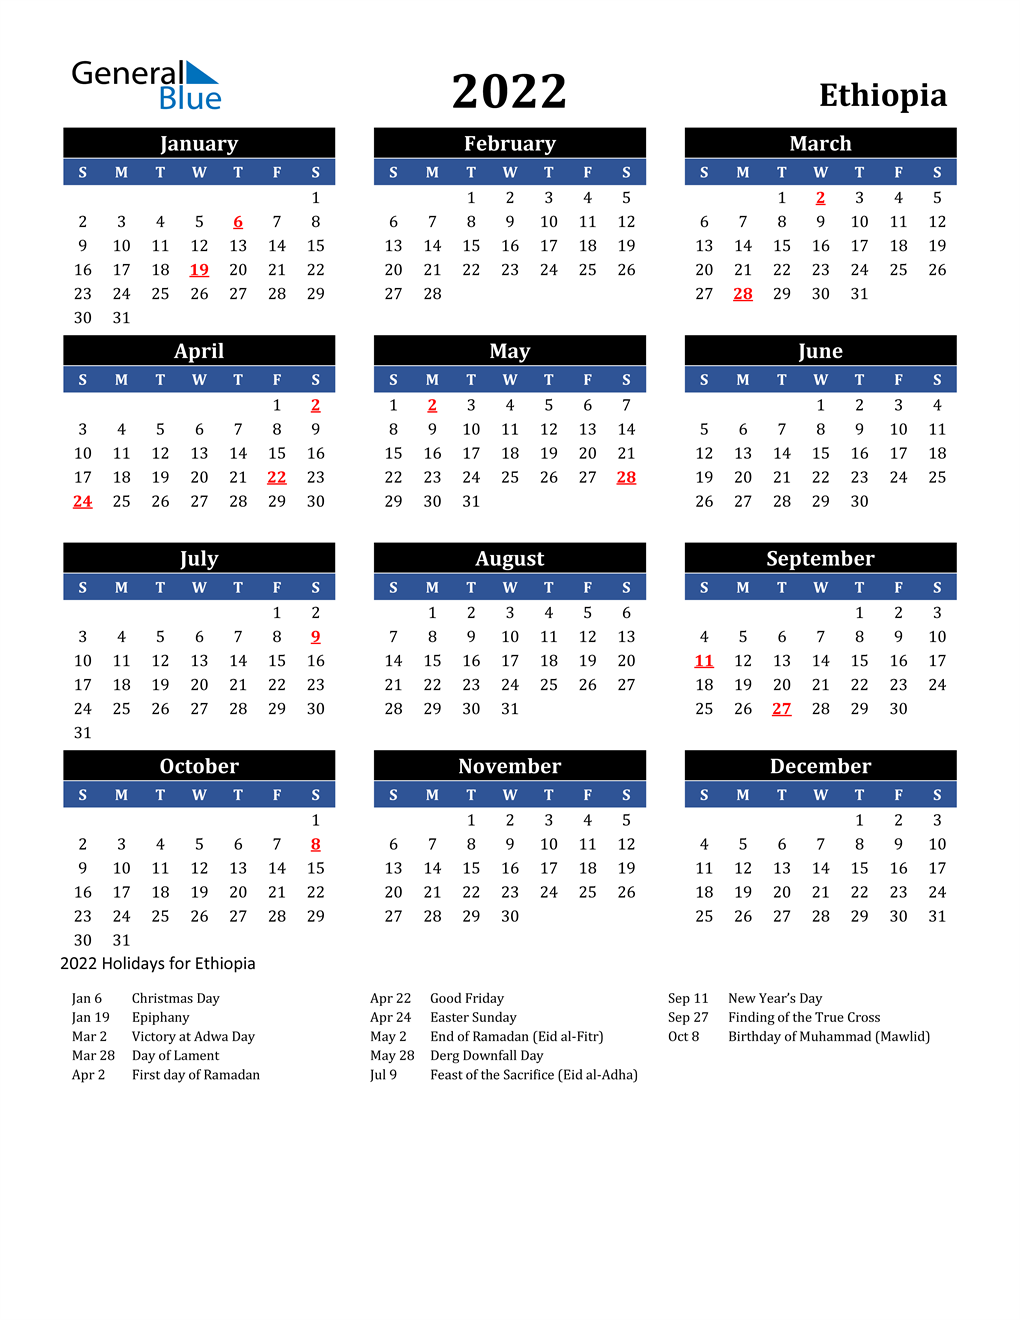 Ethiopian Orthodox Fasting Calendar 2022 2022 Ethiopia Calendar With Holidays